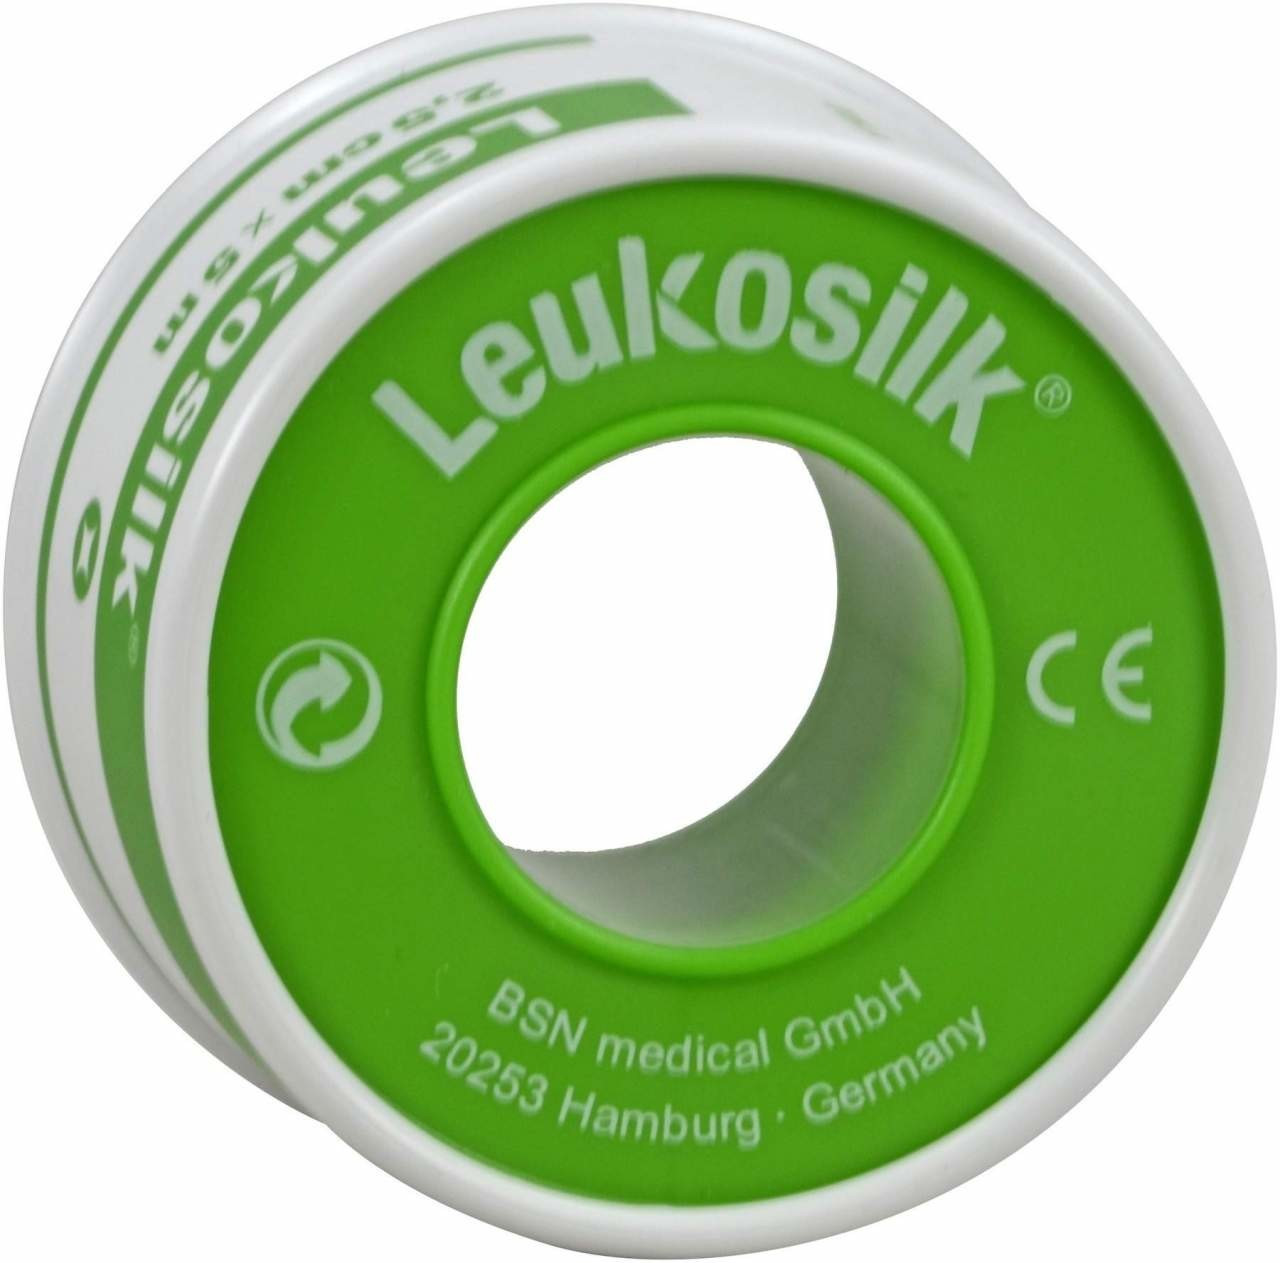 Leukosilk® Rollenpflaster 2,5cm x 5m - Größe: 2,5 cm x 5 m